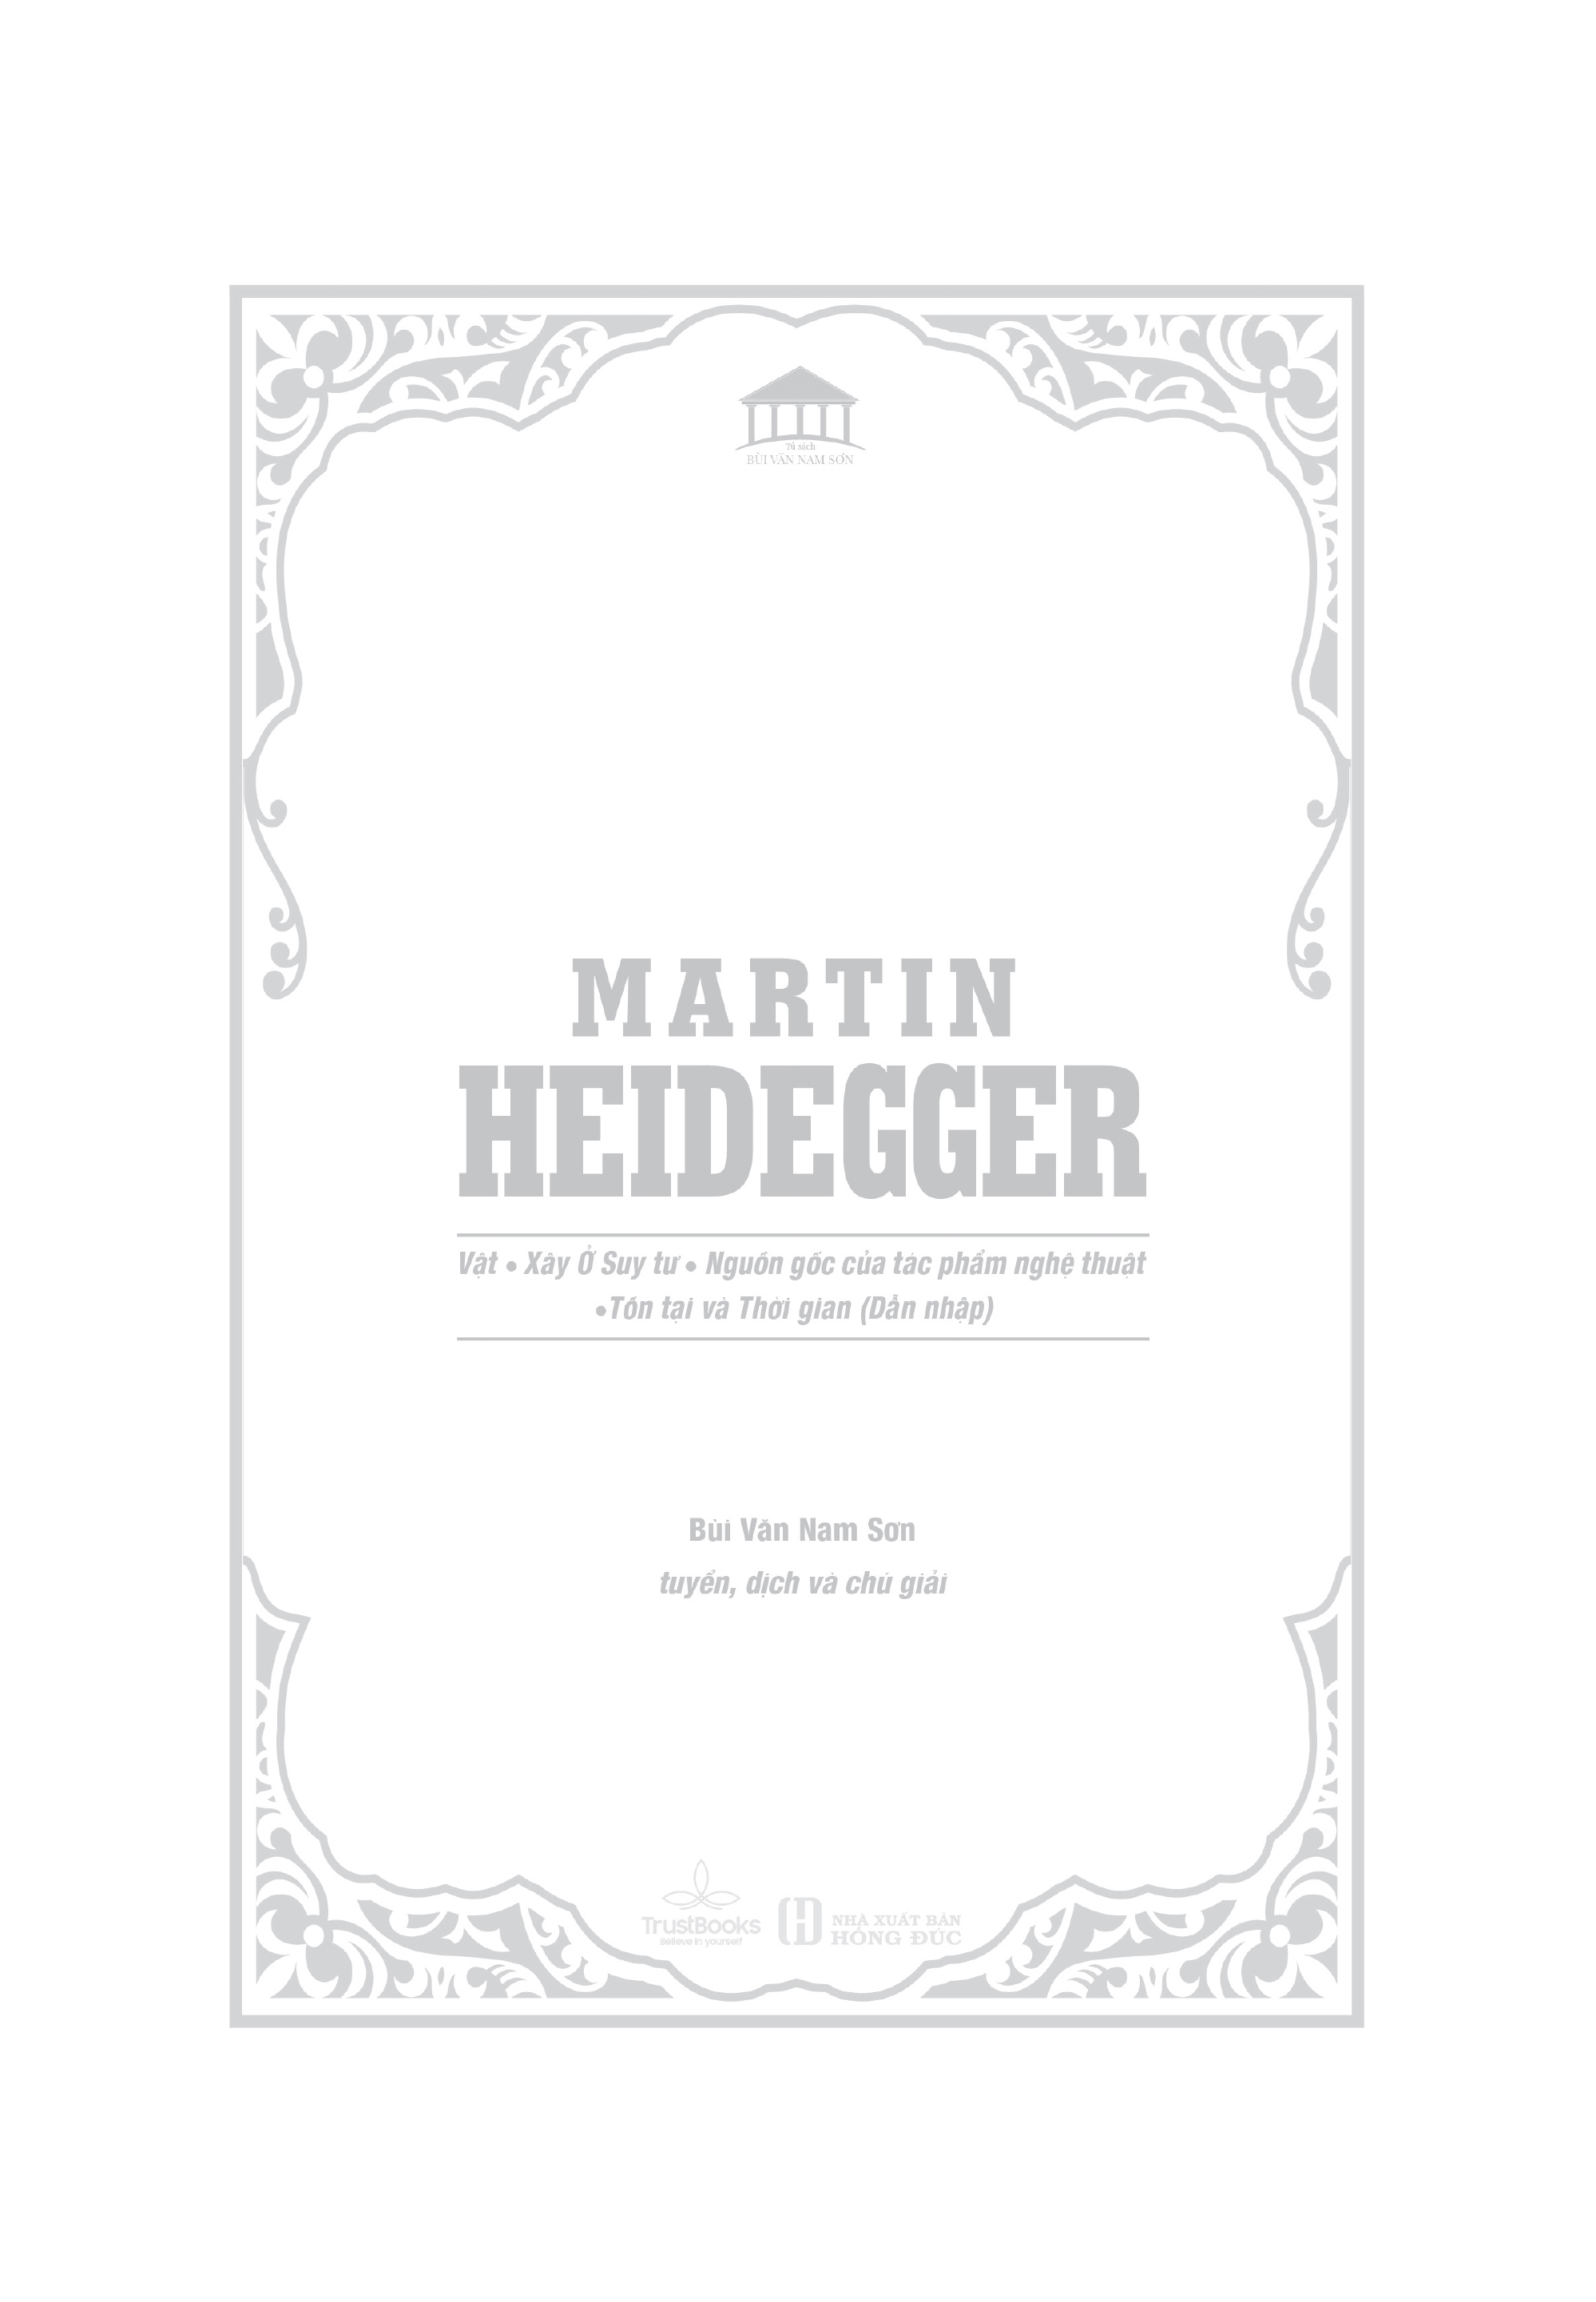 MARTIN HEIDEGGER - Vật, Xây Ở Suy Tư, Nguồn Gốc Của Tác Phẩm Nghệ Thuật, Tồn Tại và Thời Gian